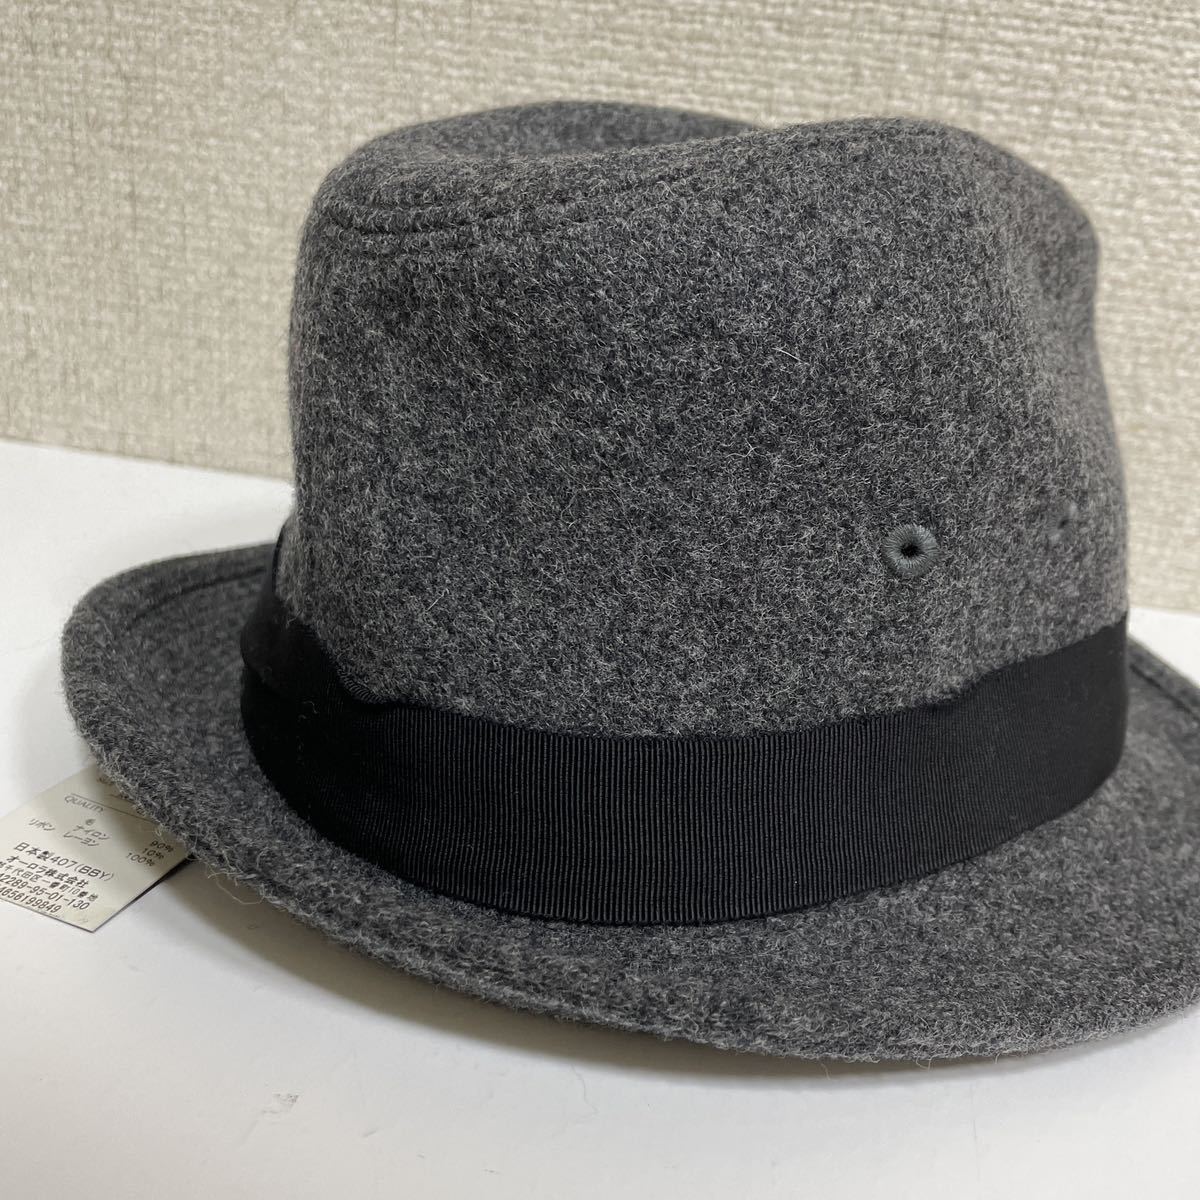 B 新品 TOKIO HATトーキョーハット 帽子 ウール混 中折れハット M 